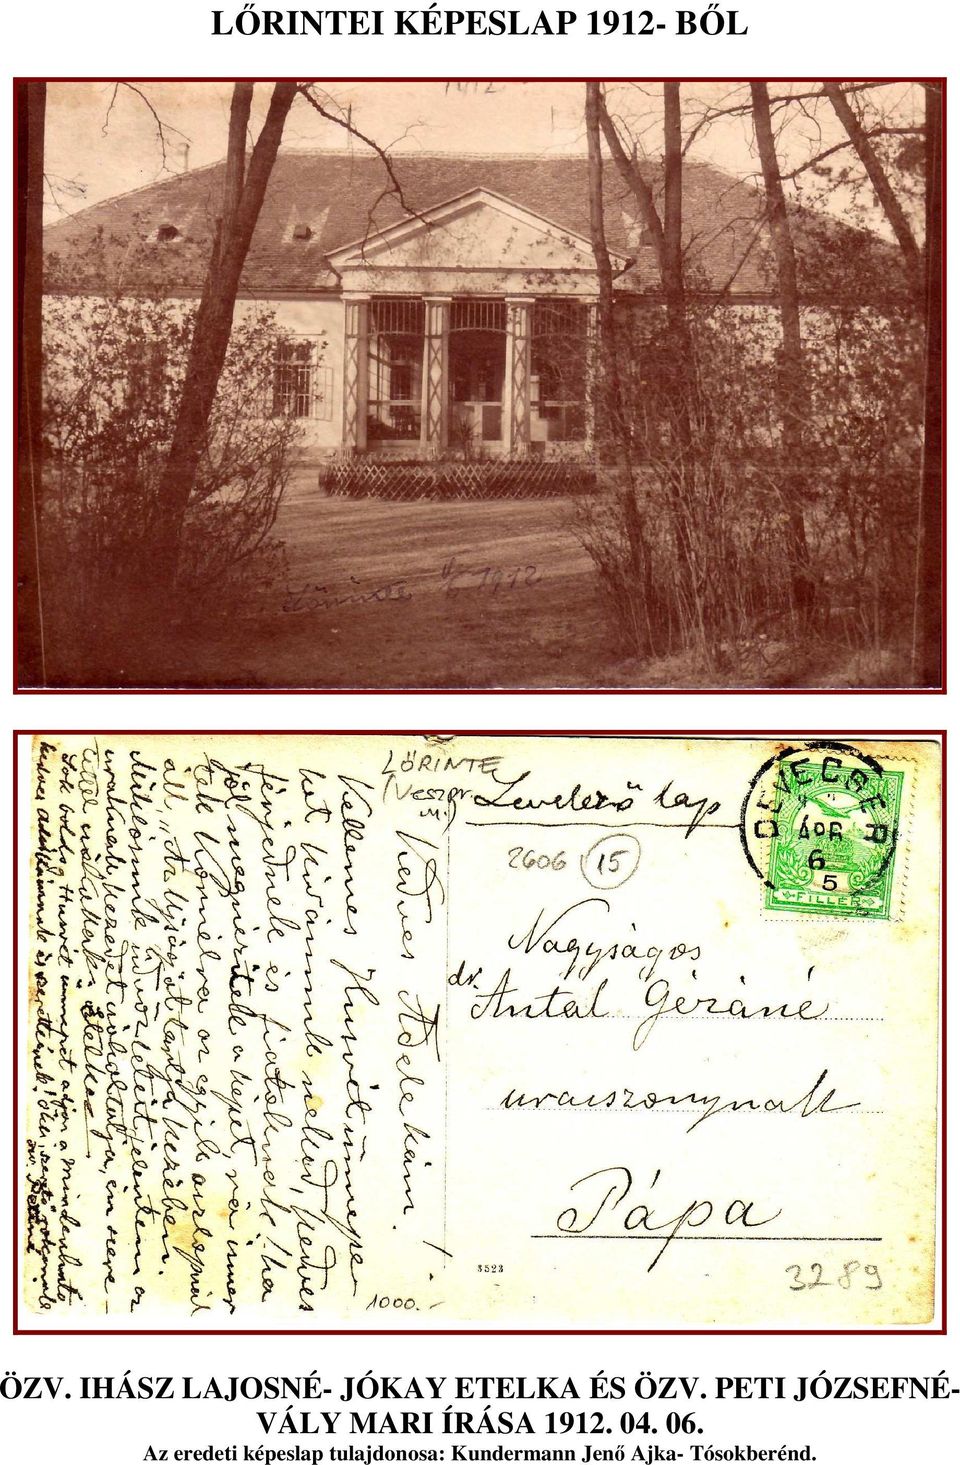 PETI JÓZSEFNÉ- VÁLY MARI ÍRÁSA 1912. 04. 06.